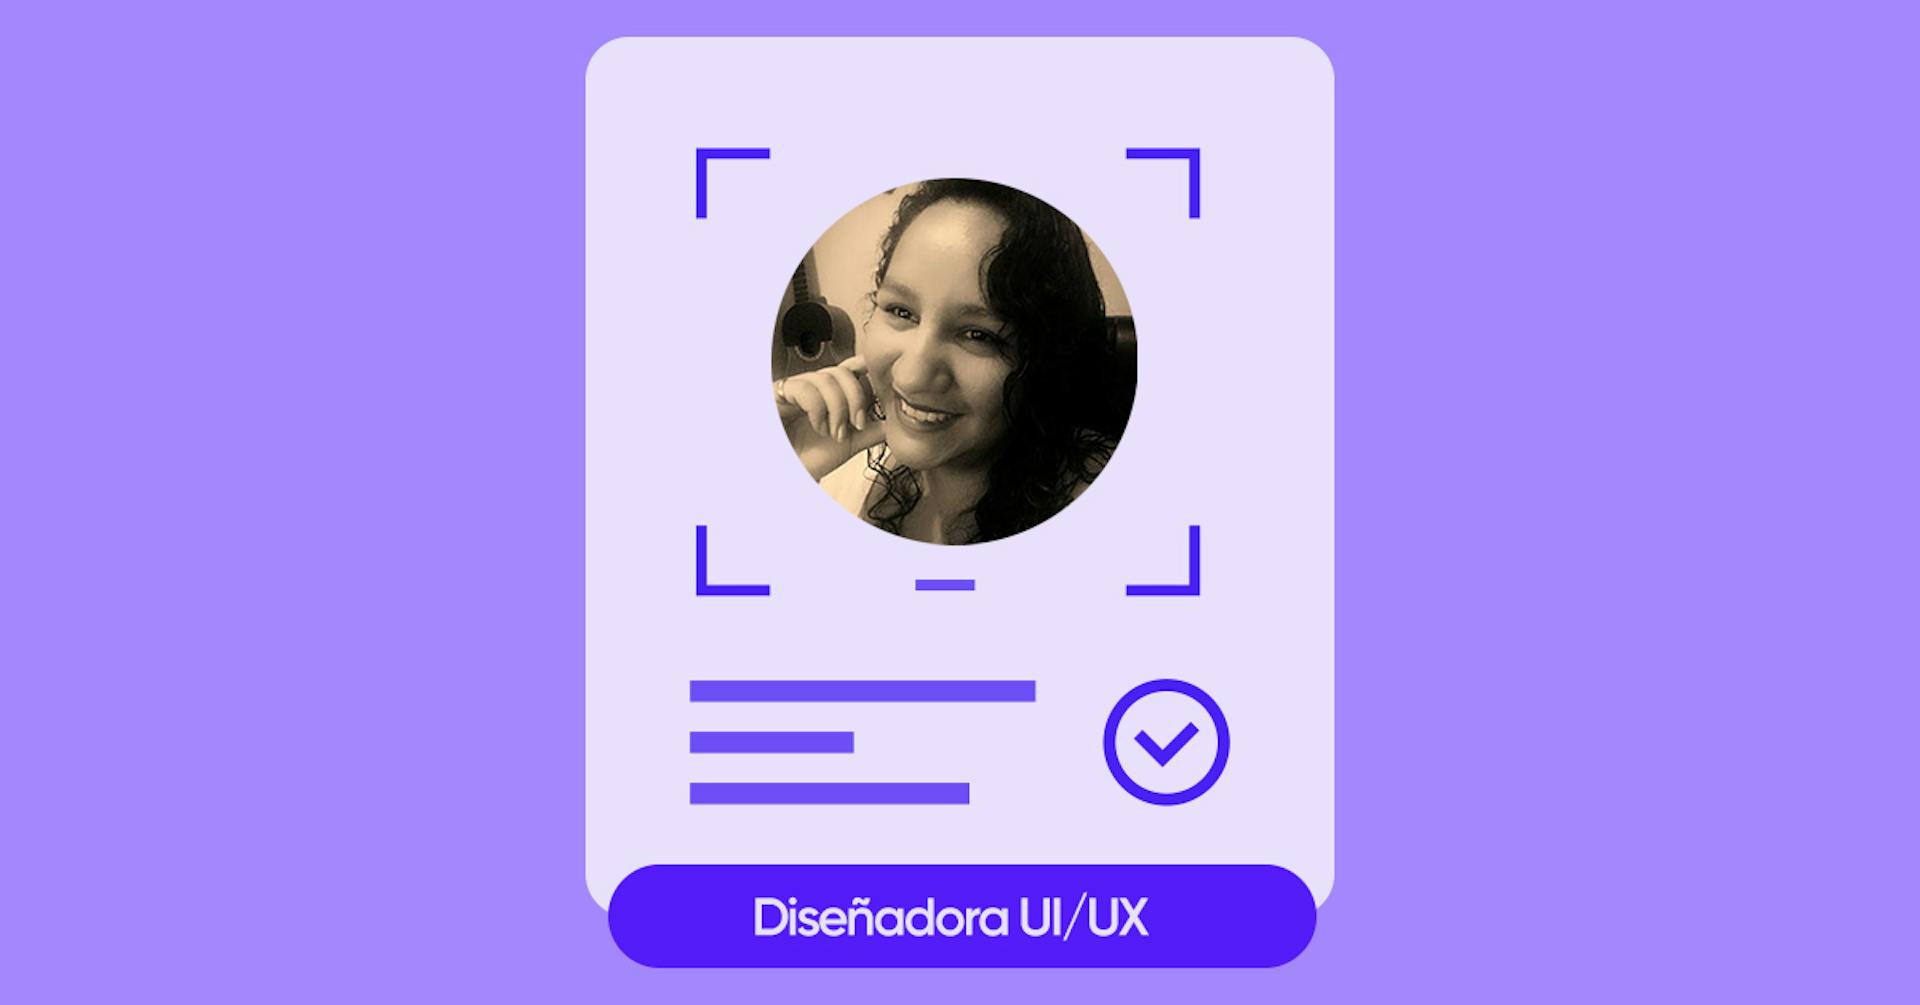 Grehtlingmar Fernández, la persona que encontró el trabajo de sus sueños gracias al MicroDegree para UX / UI Designer de Crehana